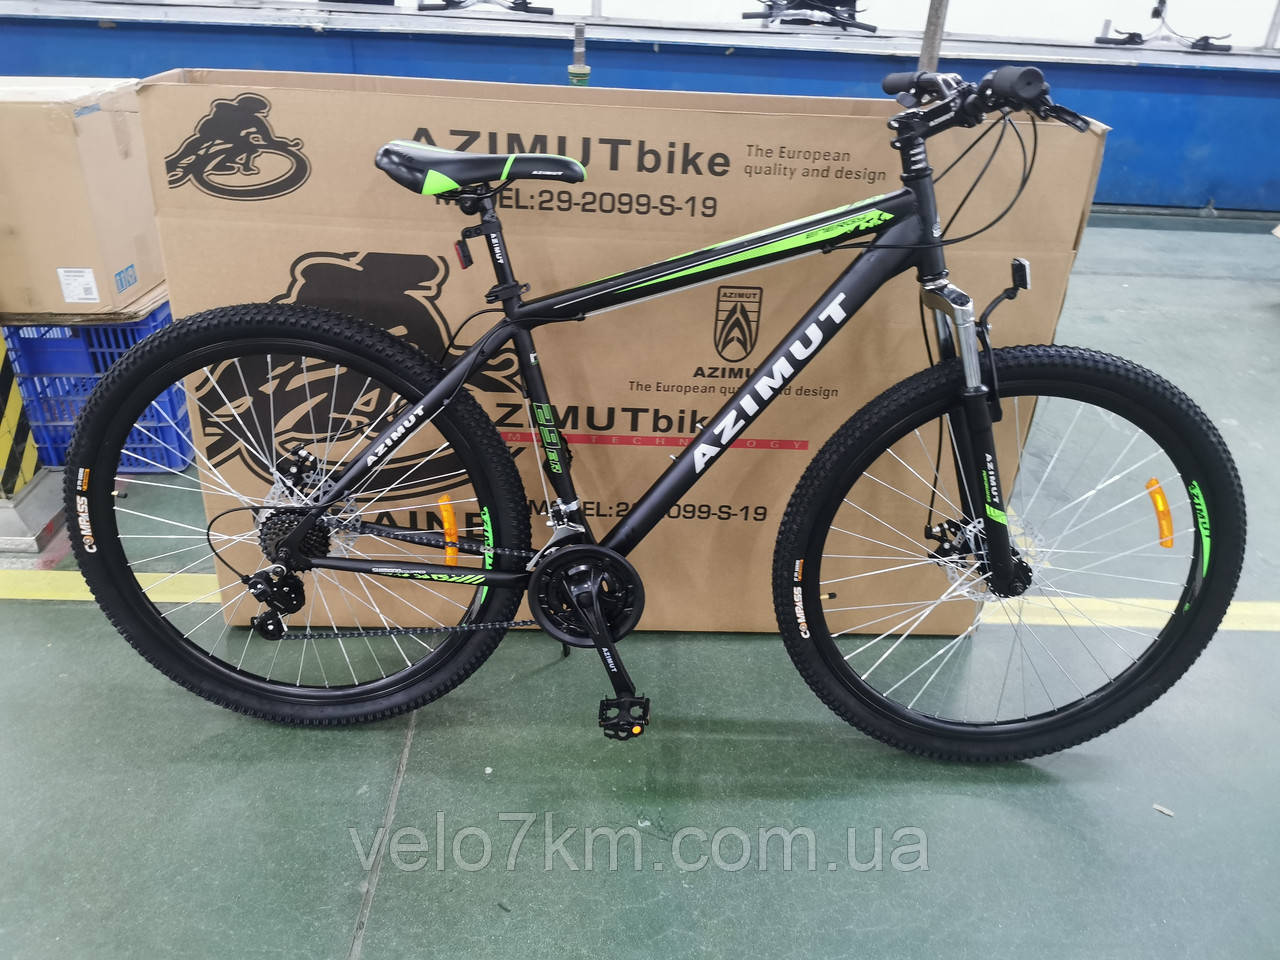 Гірський швидкісний велосипед Azimut Energy 29" GD (21 рама) Обладнання Shimano, Подвійні посилені обід кольору